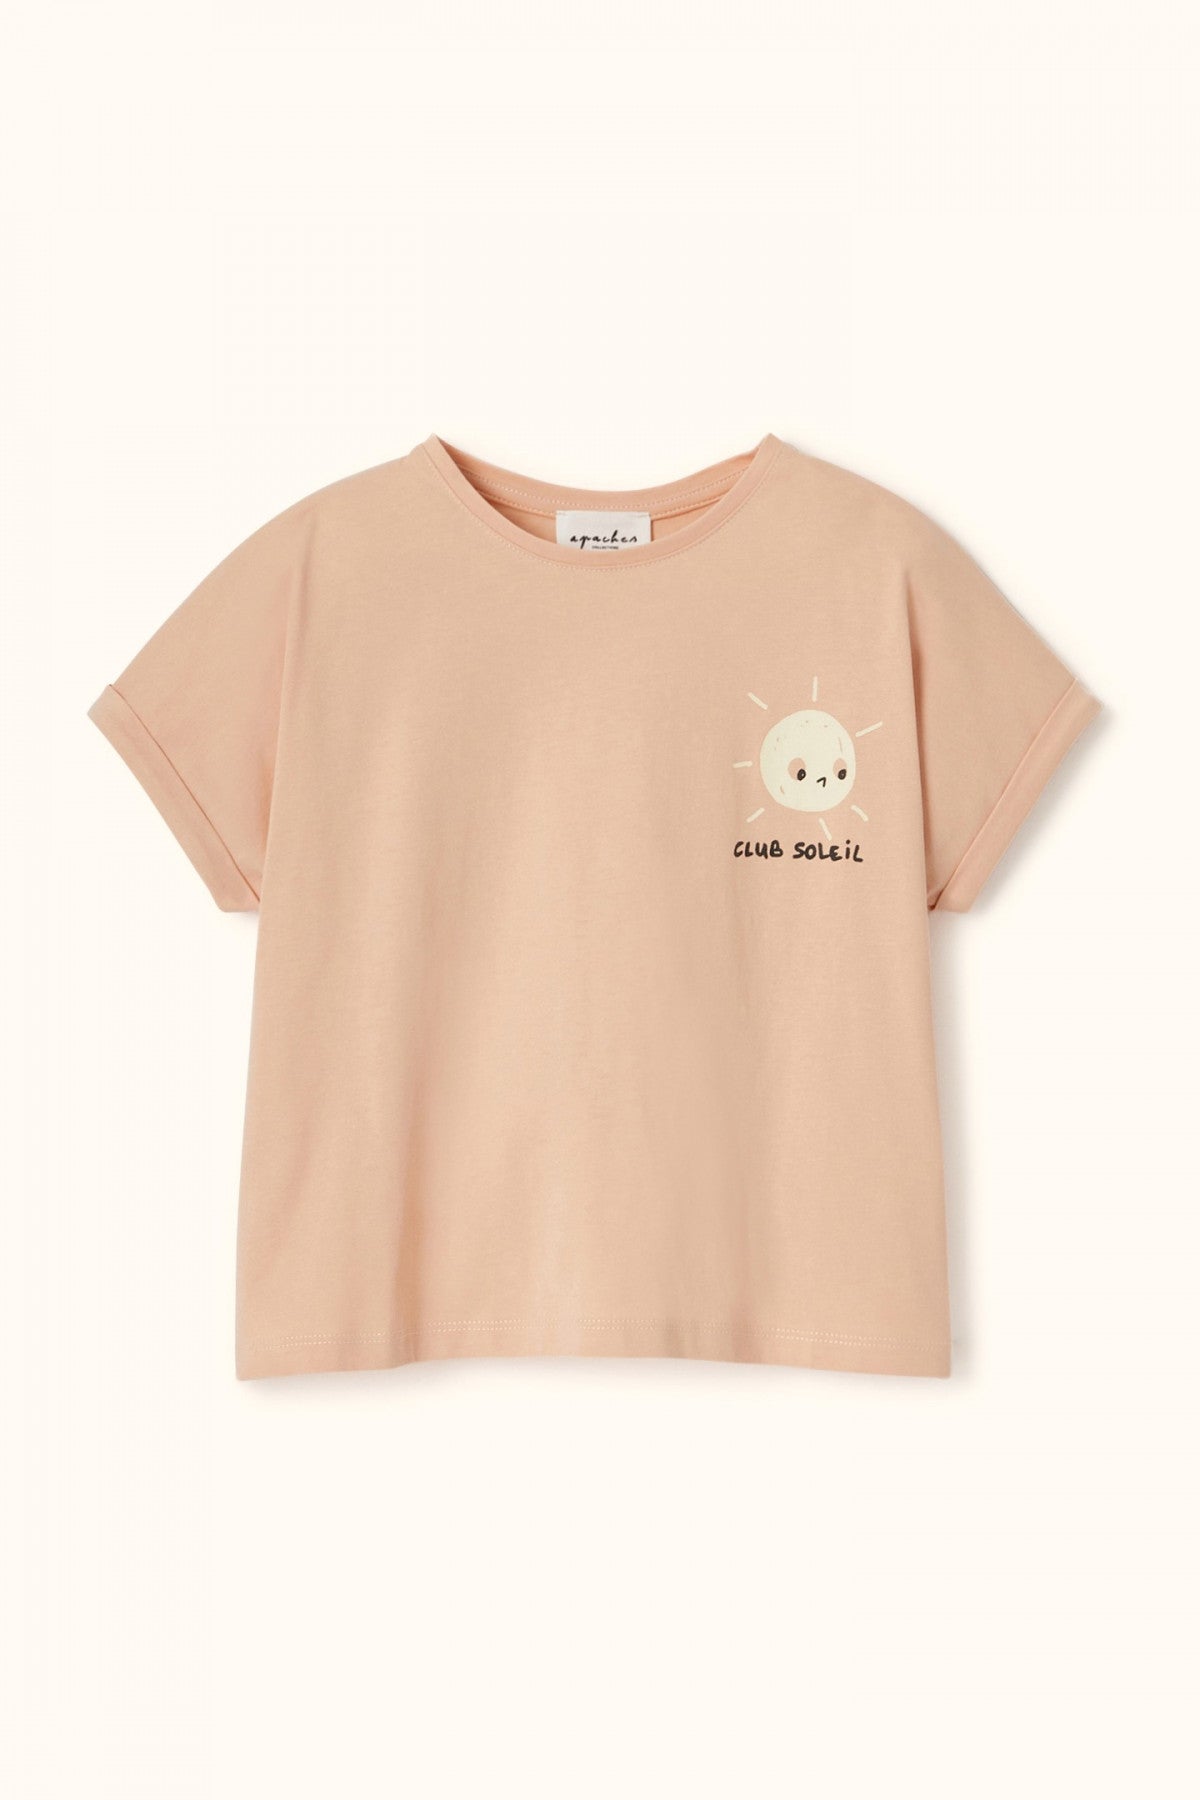 T-shirt bébé/enfant "Club Soleil/Pêche" - Apaches Collections